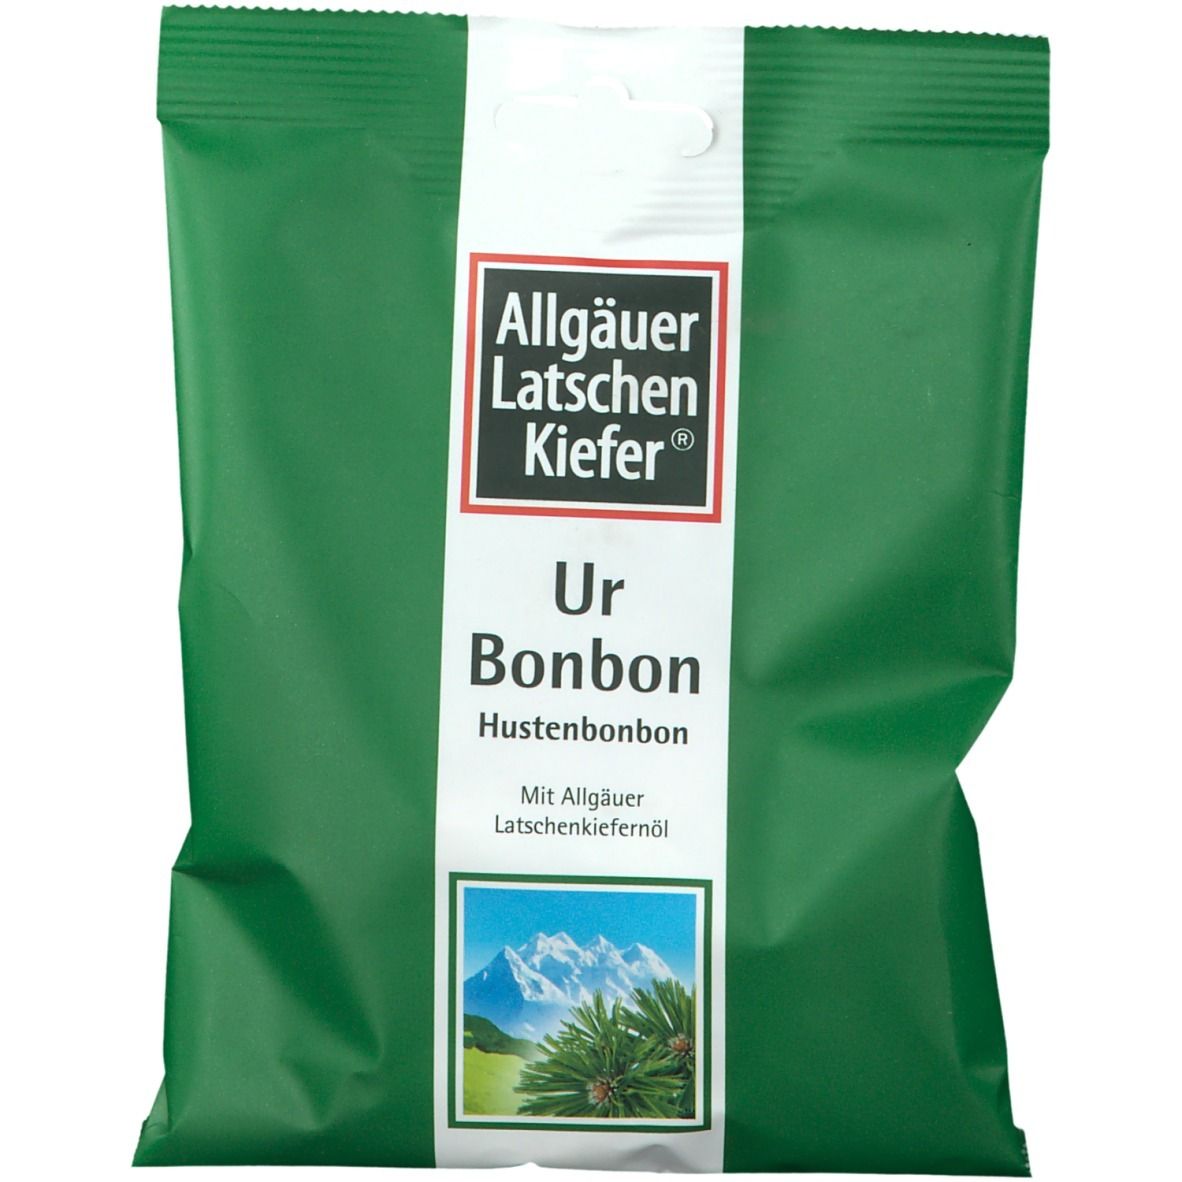 Image of Allgäuer Latschenkiefer® Ur Bonbon